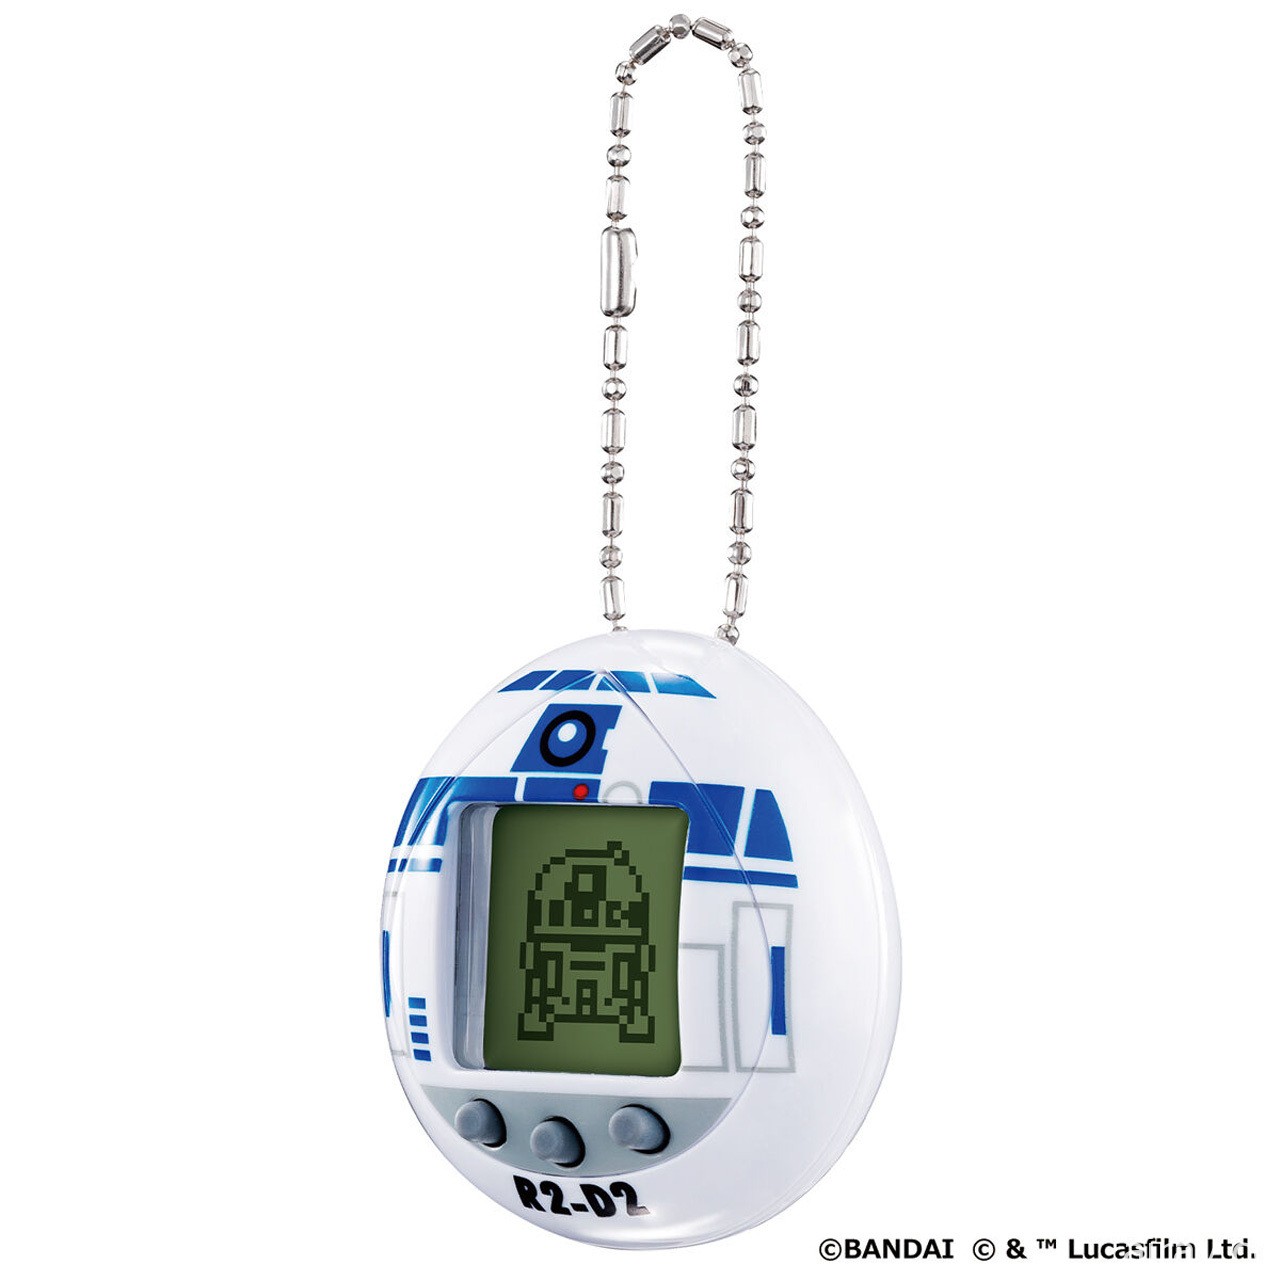 《星际大战》招牌吉祥物“R2-D2”化身电子鸡登场 收录 19 种型态与众多小游戏